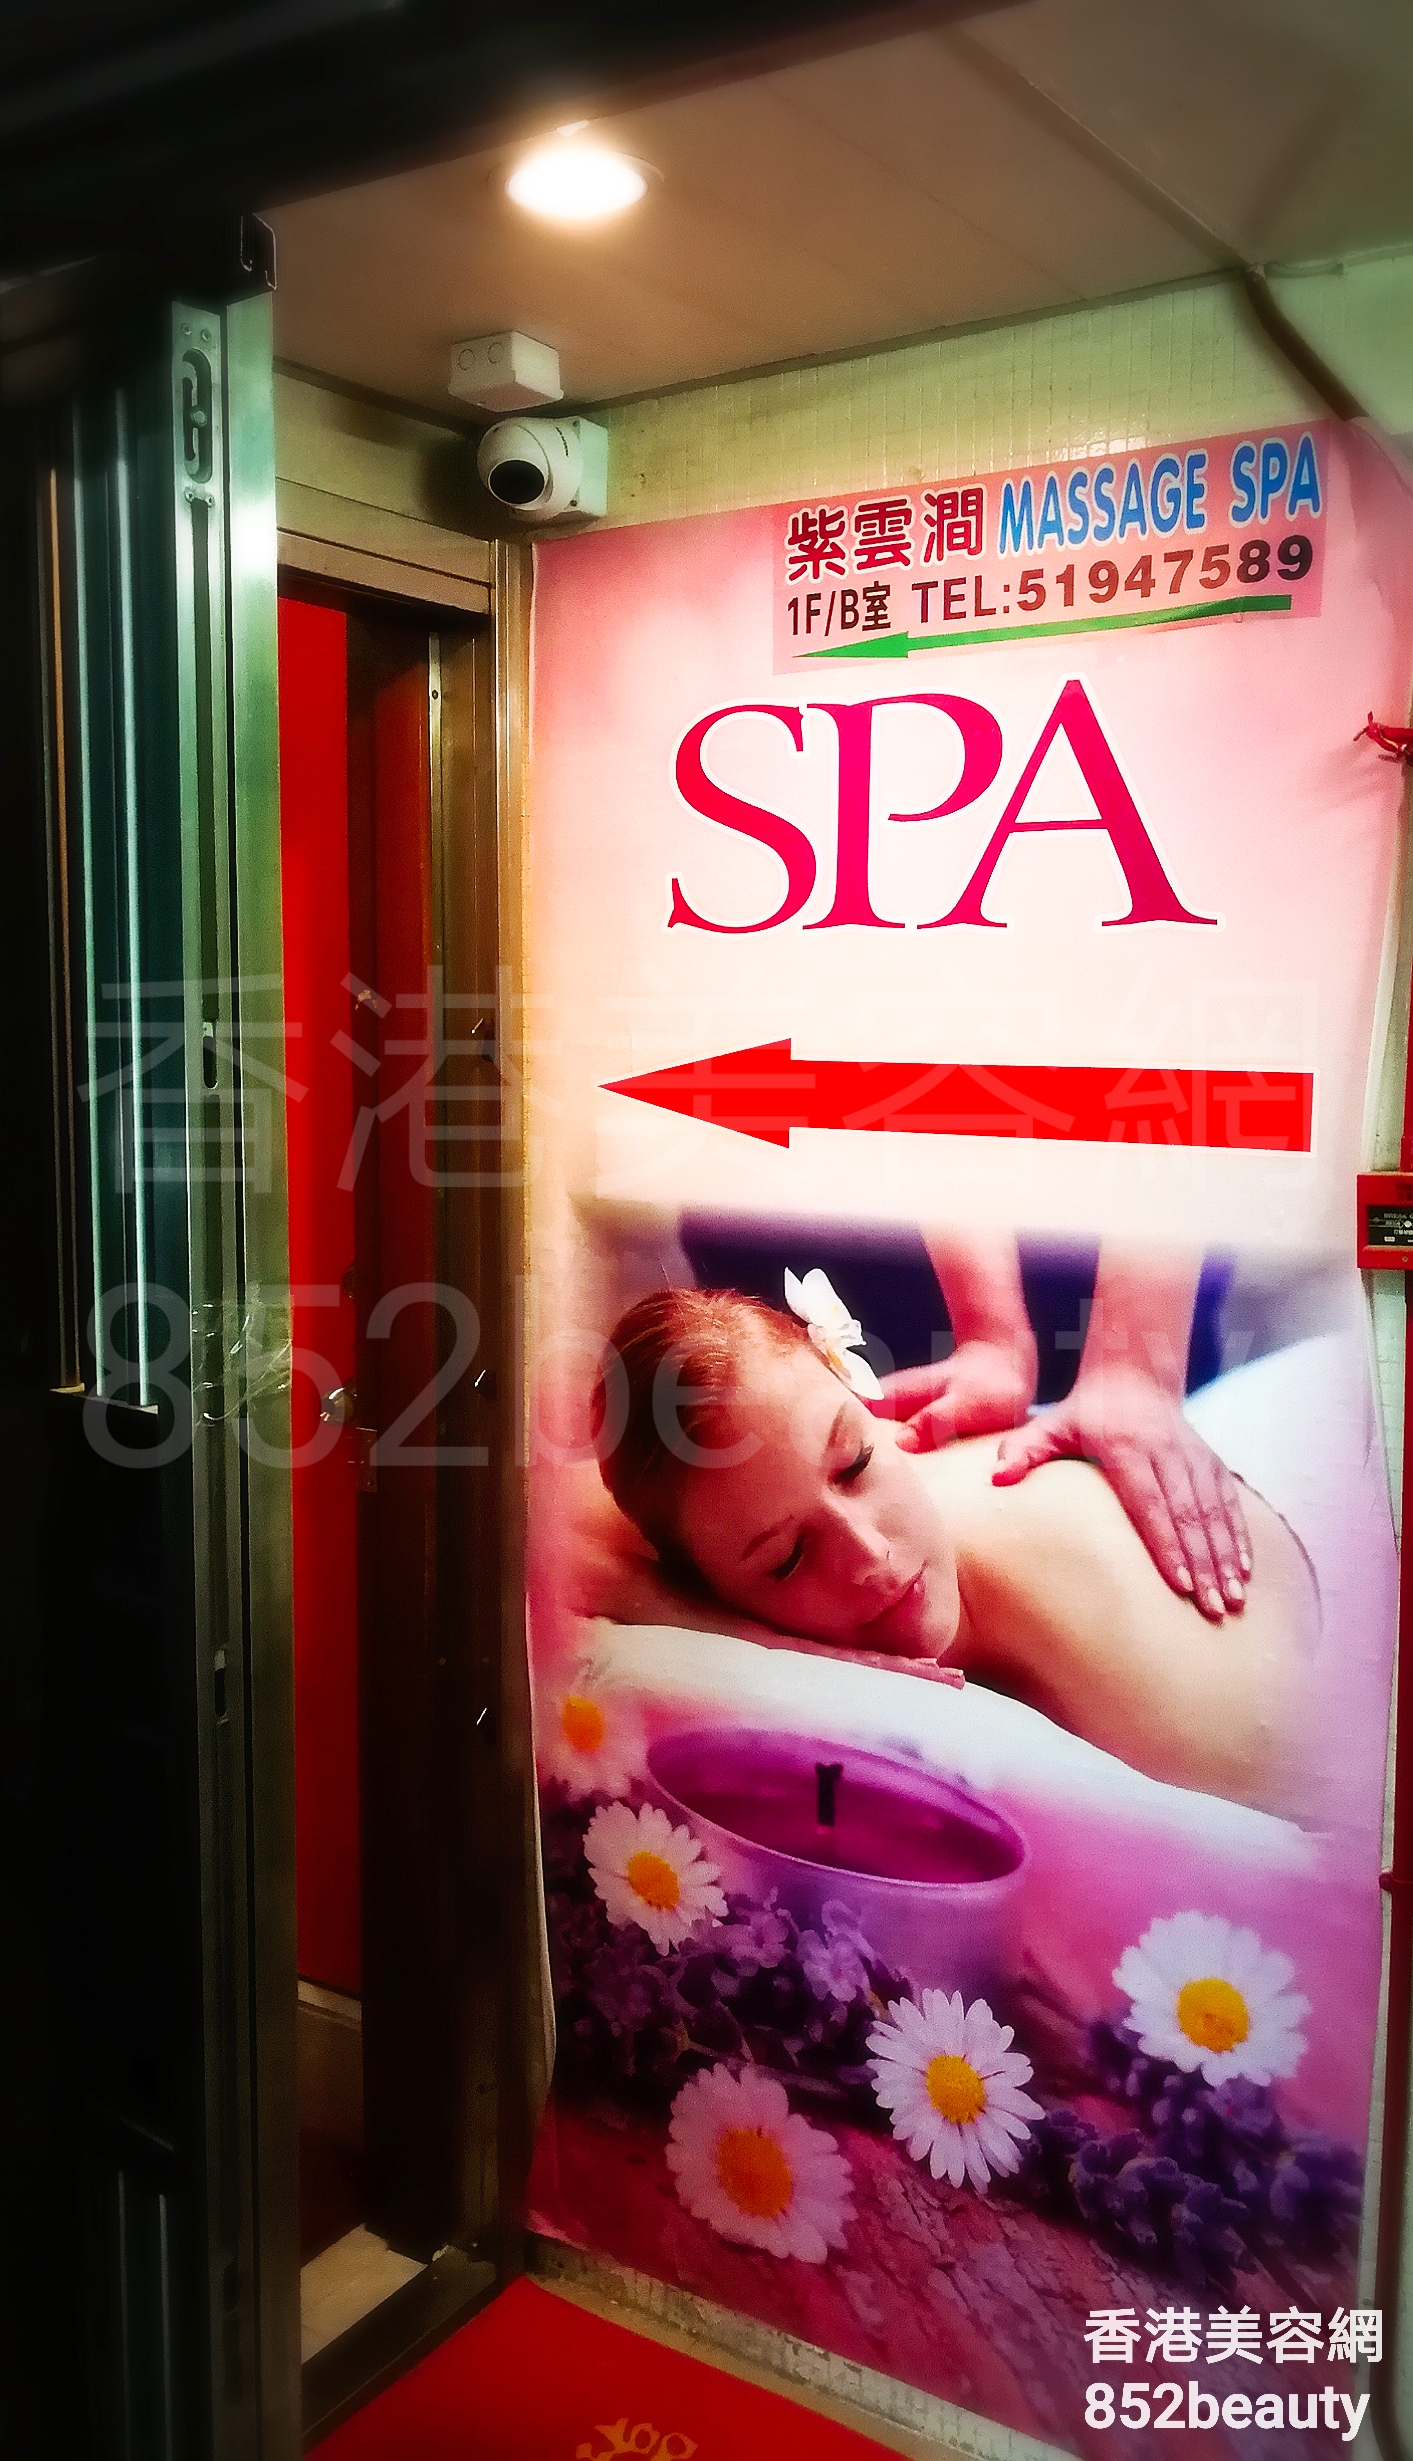 香港美容網 Hong Kong Beauty Salon 美容院 / 美容師: 紫雲澗